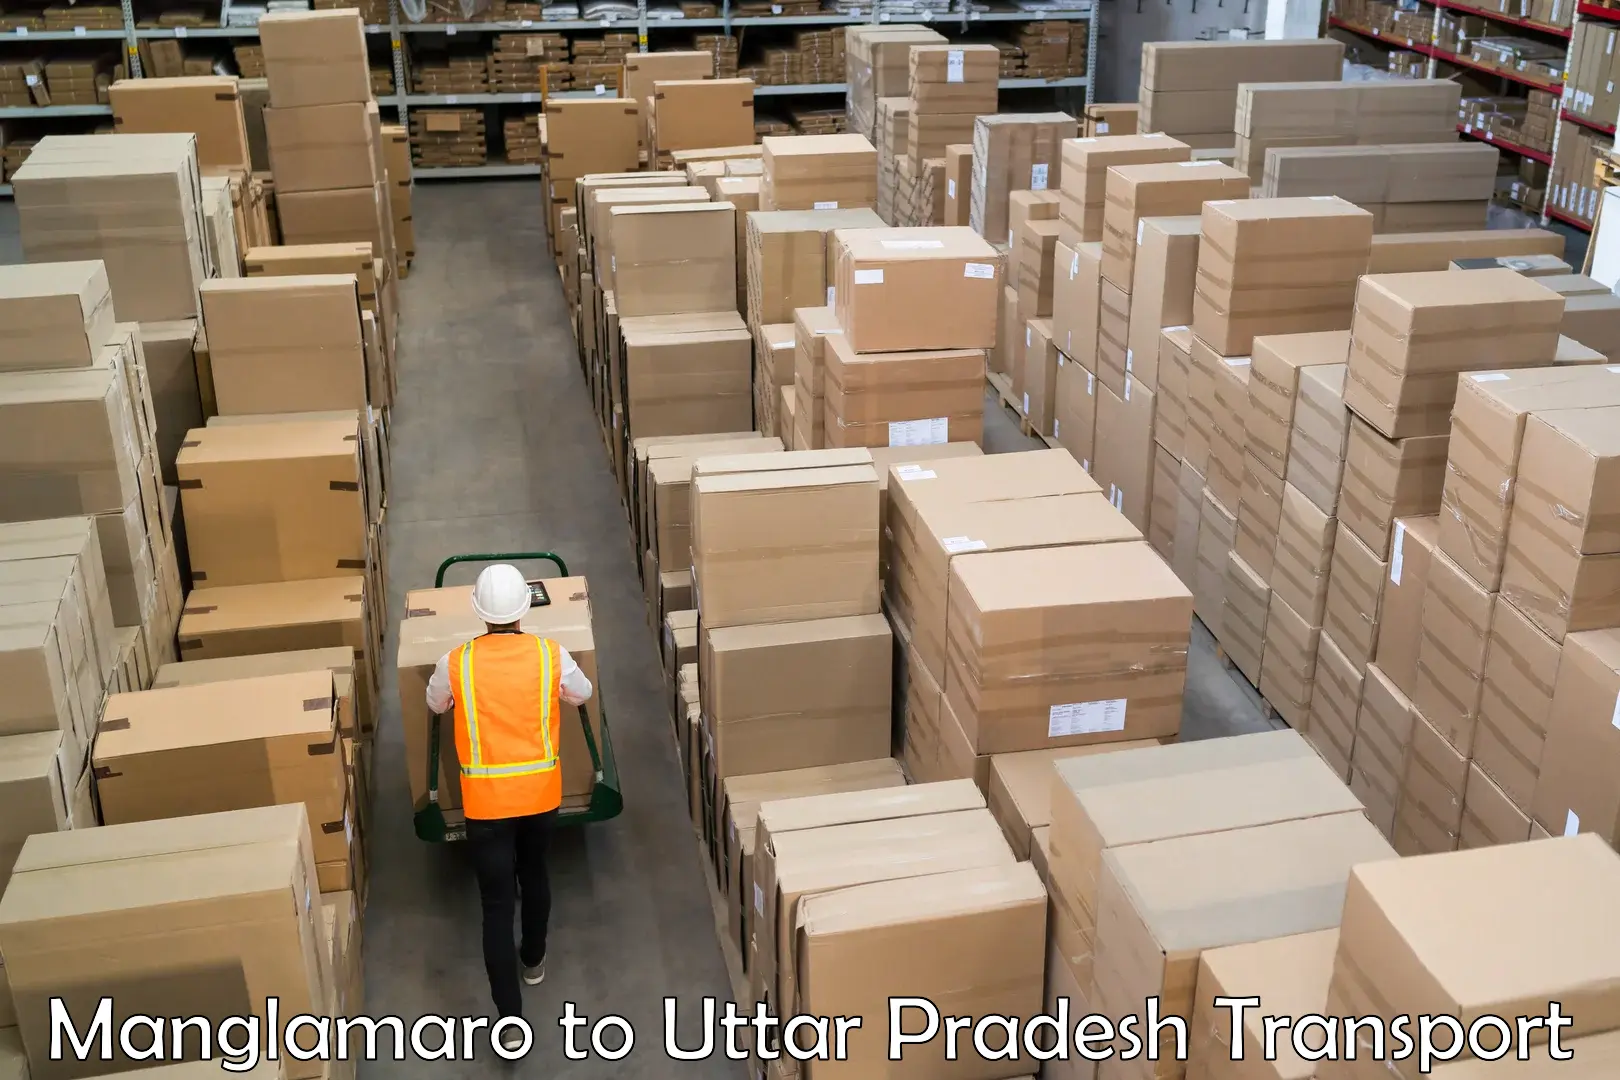 Shipping partner Manglamaro to Kauriram